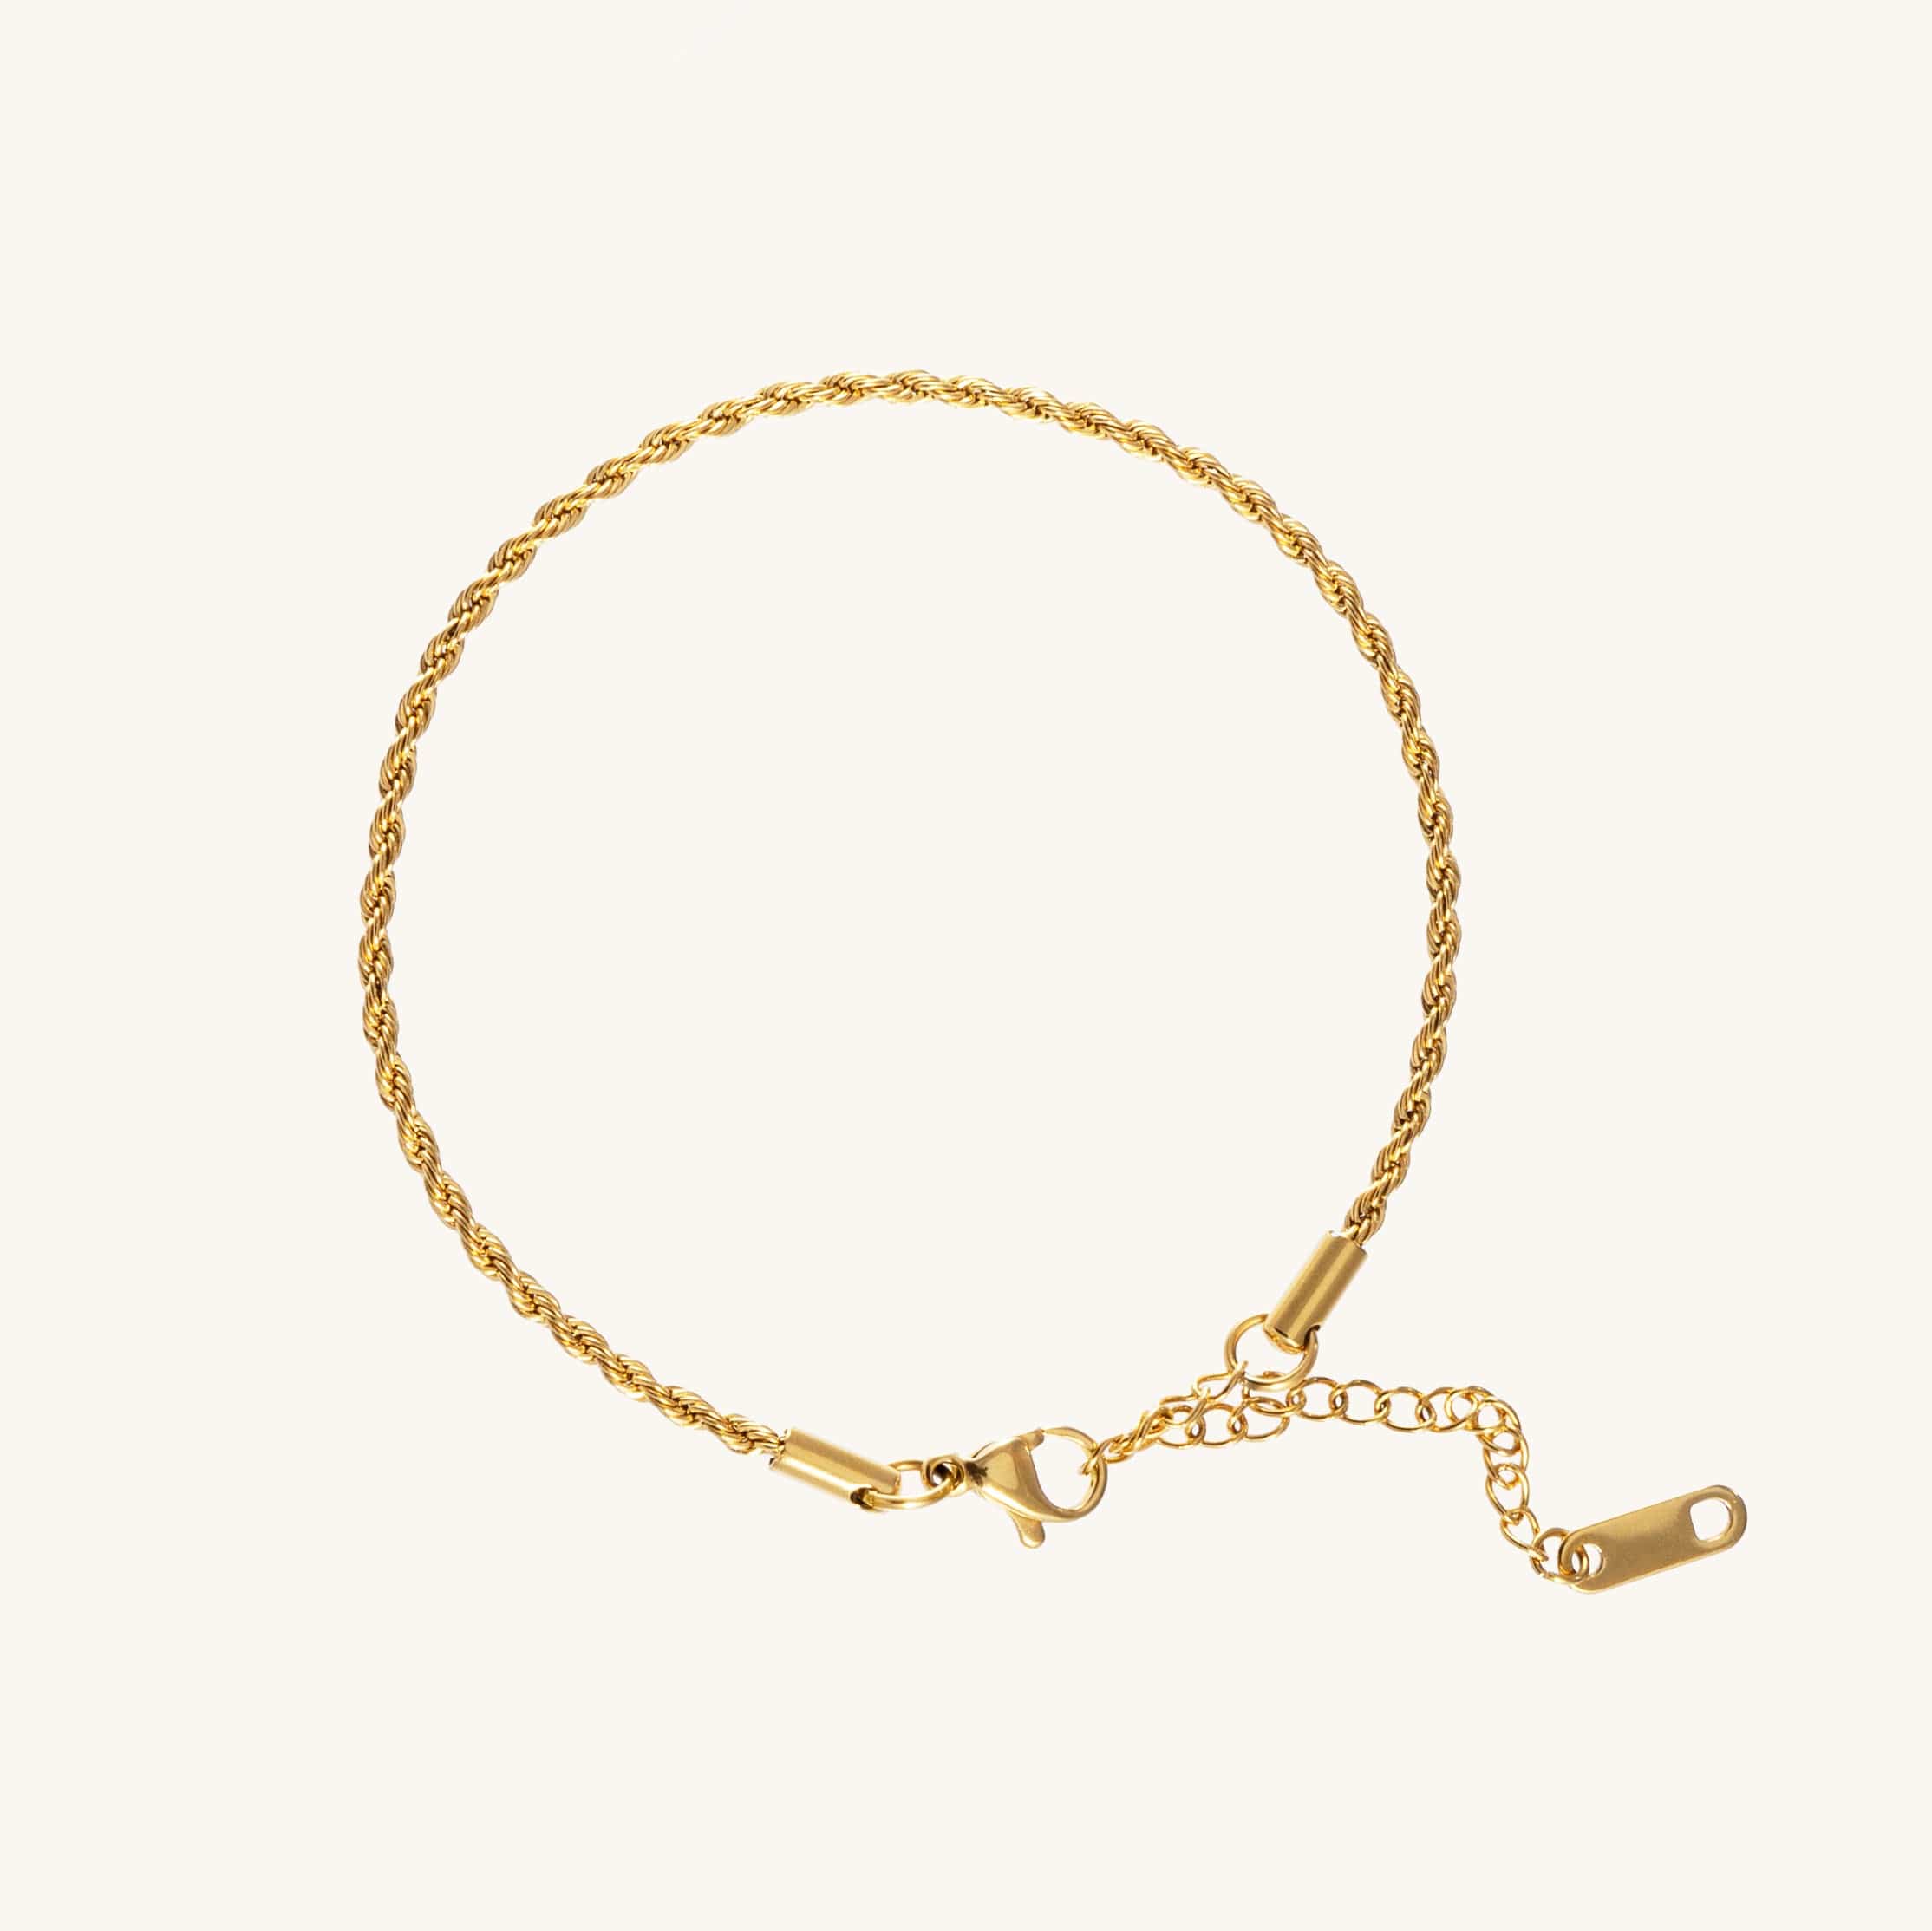 Yolanthe Rope Bracelet by Koréil Jewelry